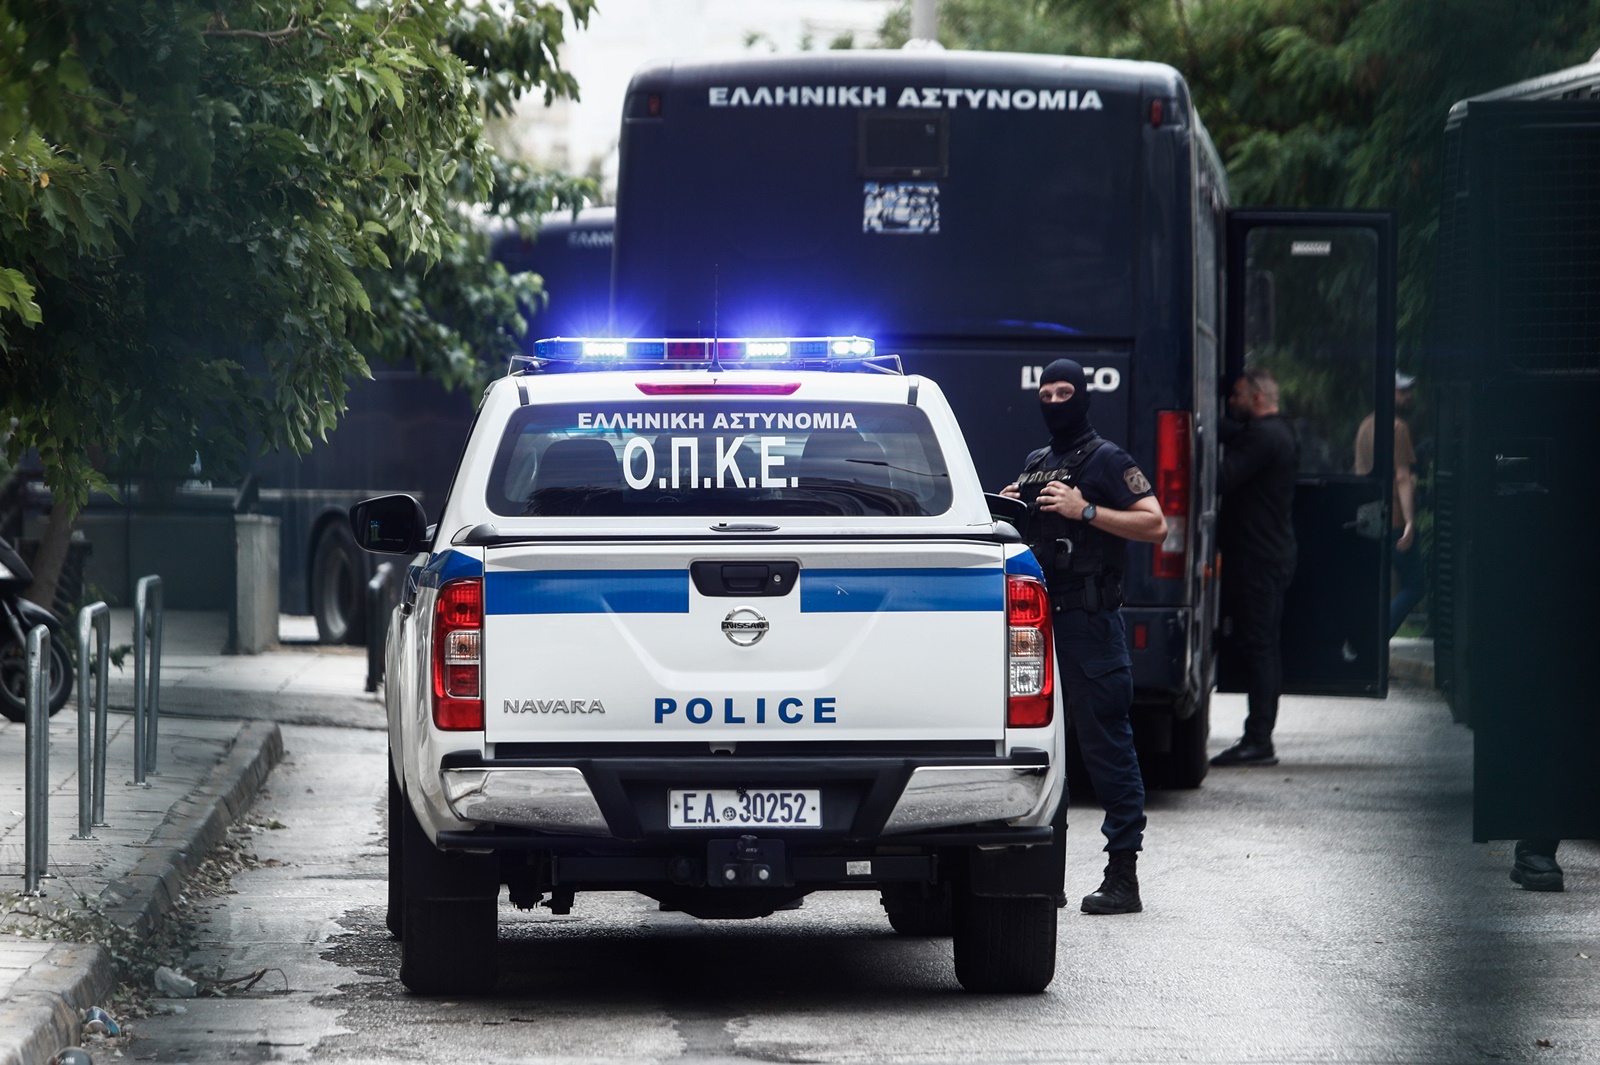 Οπαδός Παναθηναϊκού σύλληψη: Αρχηγικό ρόλο φέρεται να είχε στην επίθεση ο Έλληνας χούλιγκαν